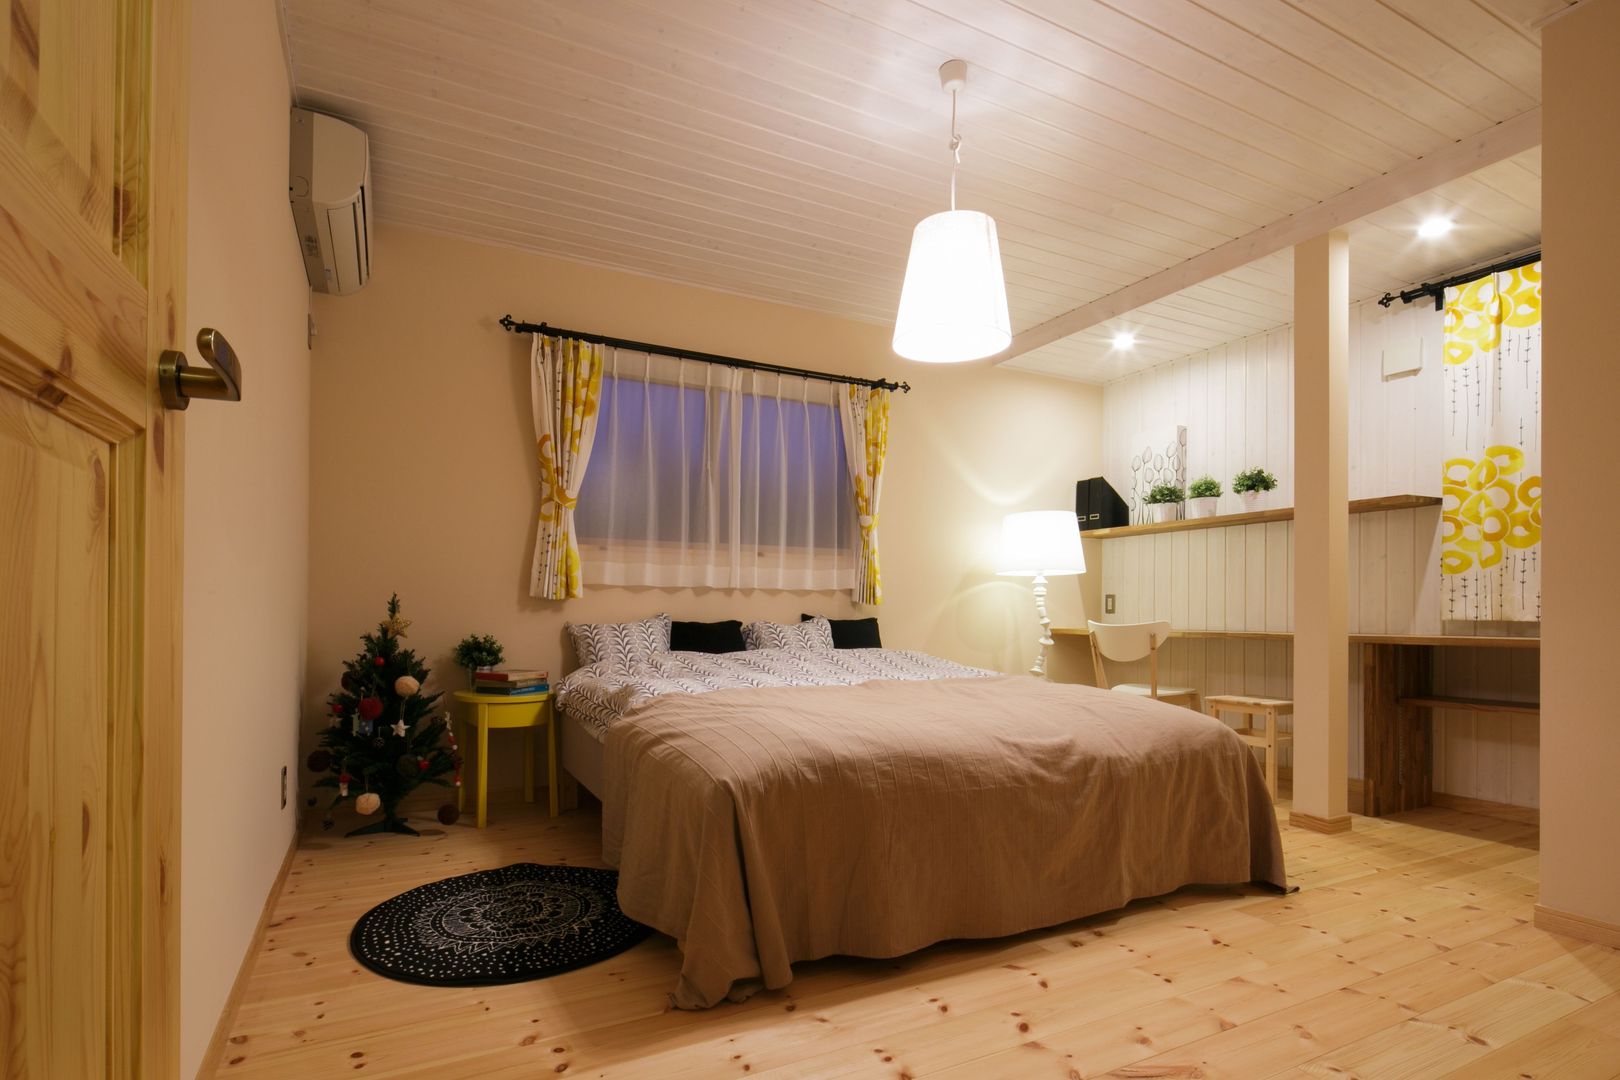 H's HOUSE, dwarf dwarf Scandinavian style bedroom